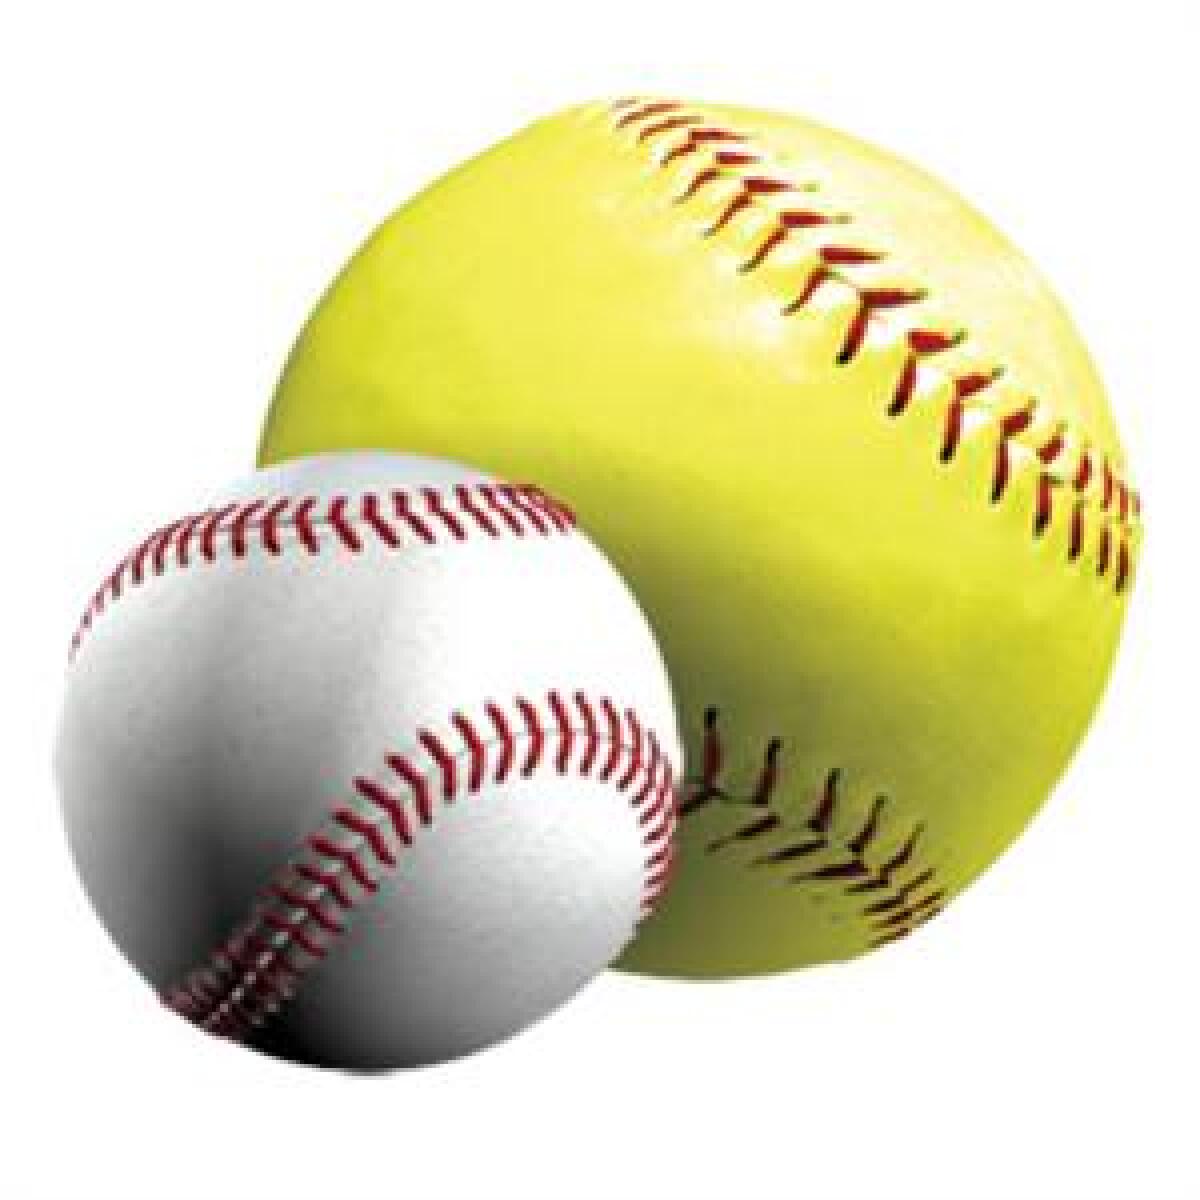 A baseball and a softball